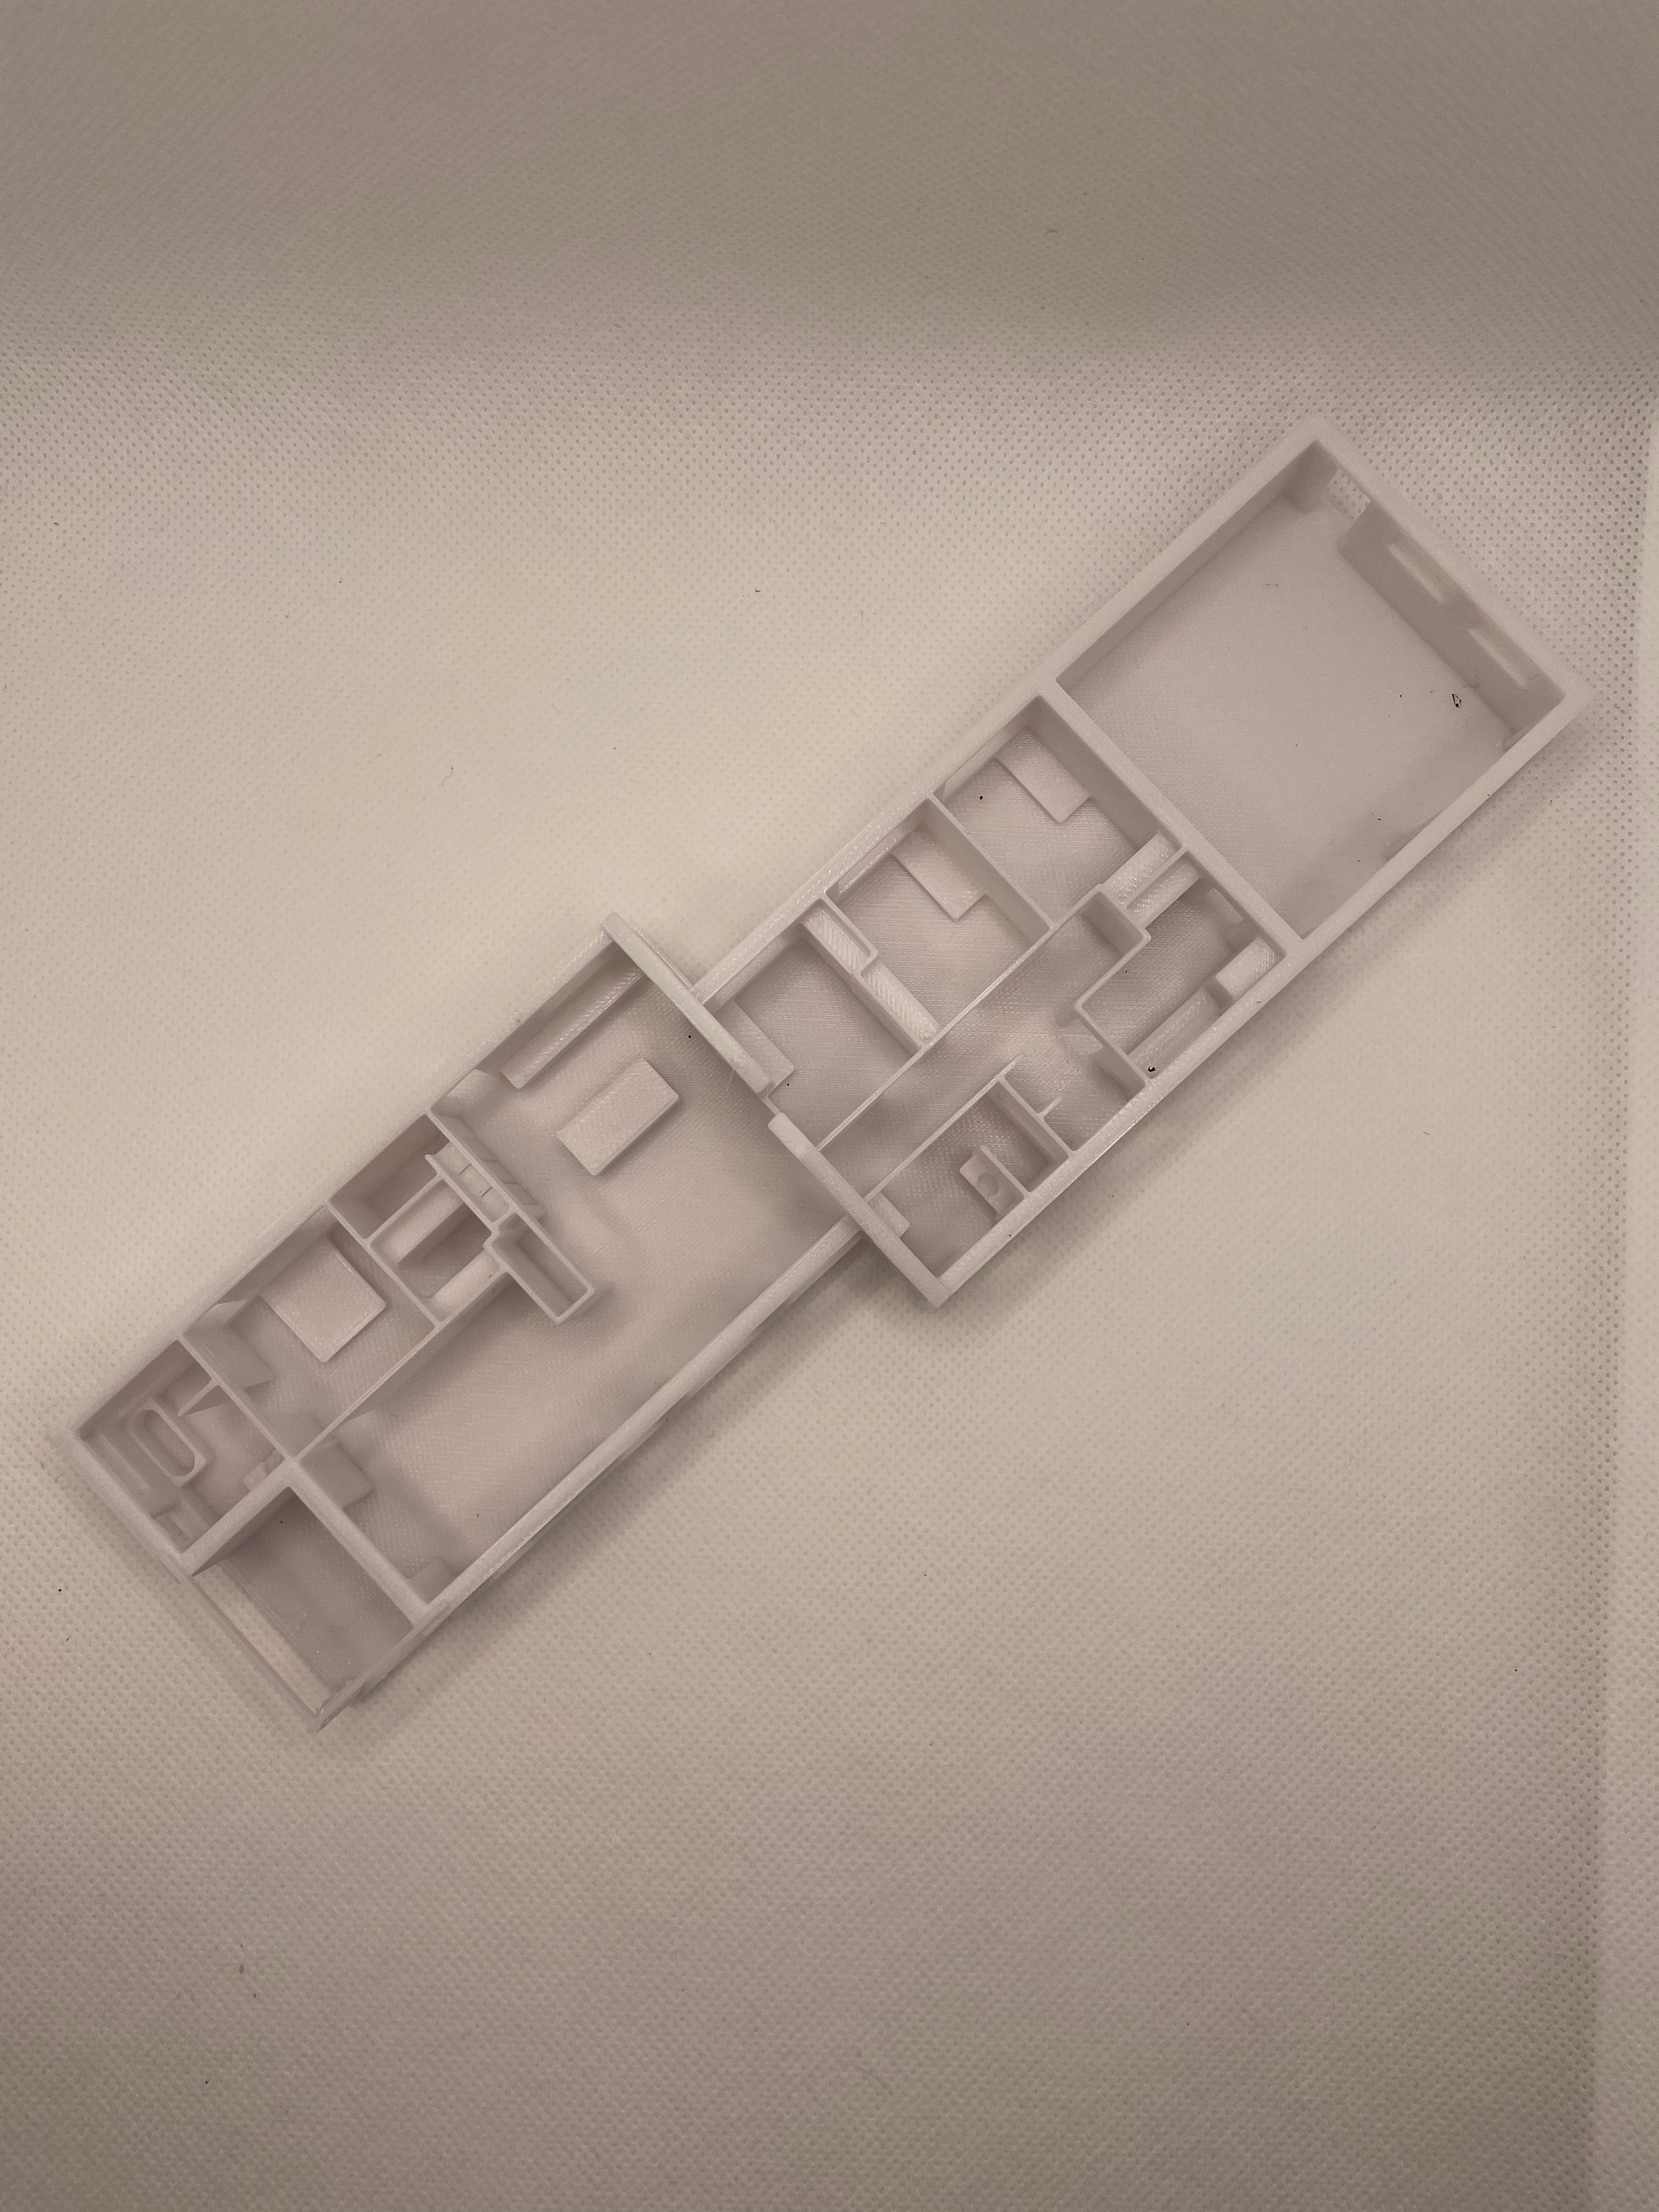 Casa impresa en 3D a partir de un plano